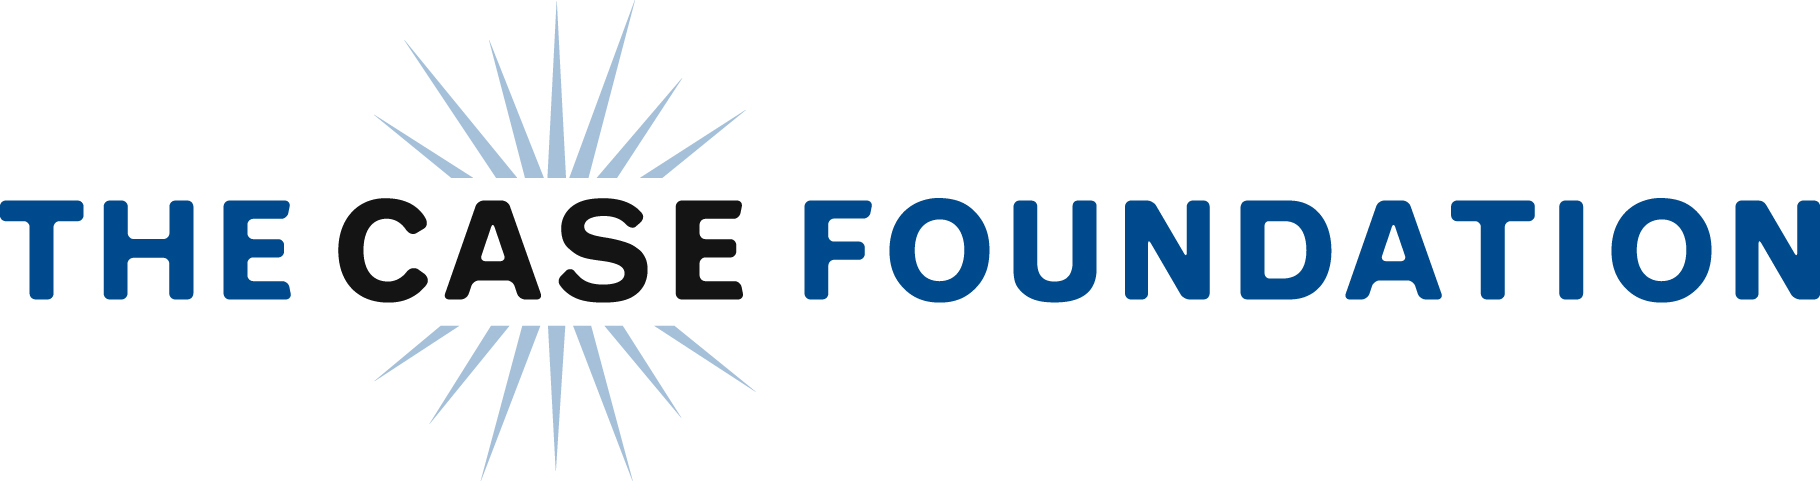 Case Foundation logo